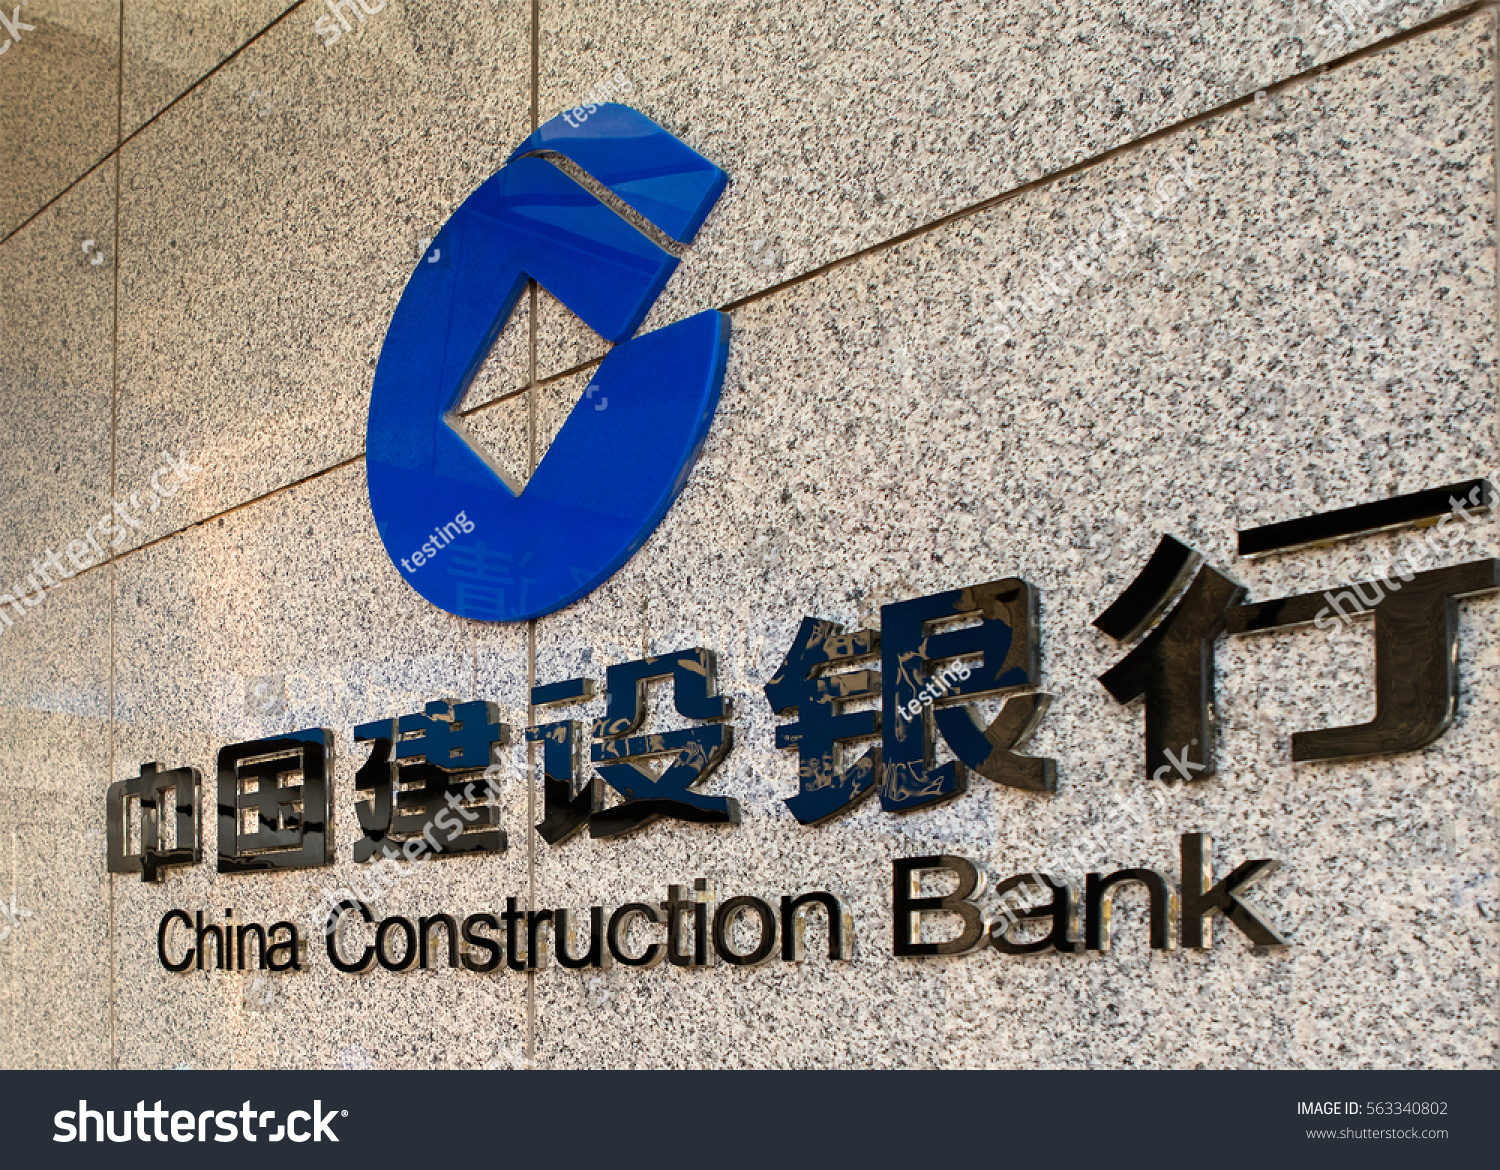 Construction bank of china. Чайна Констракшн банк. Строительный банк Китая China Construction Bank CCB. China Construction Bank (ССВ) ("строительный банк Китая"). China Construction Bank лого.